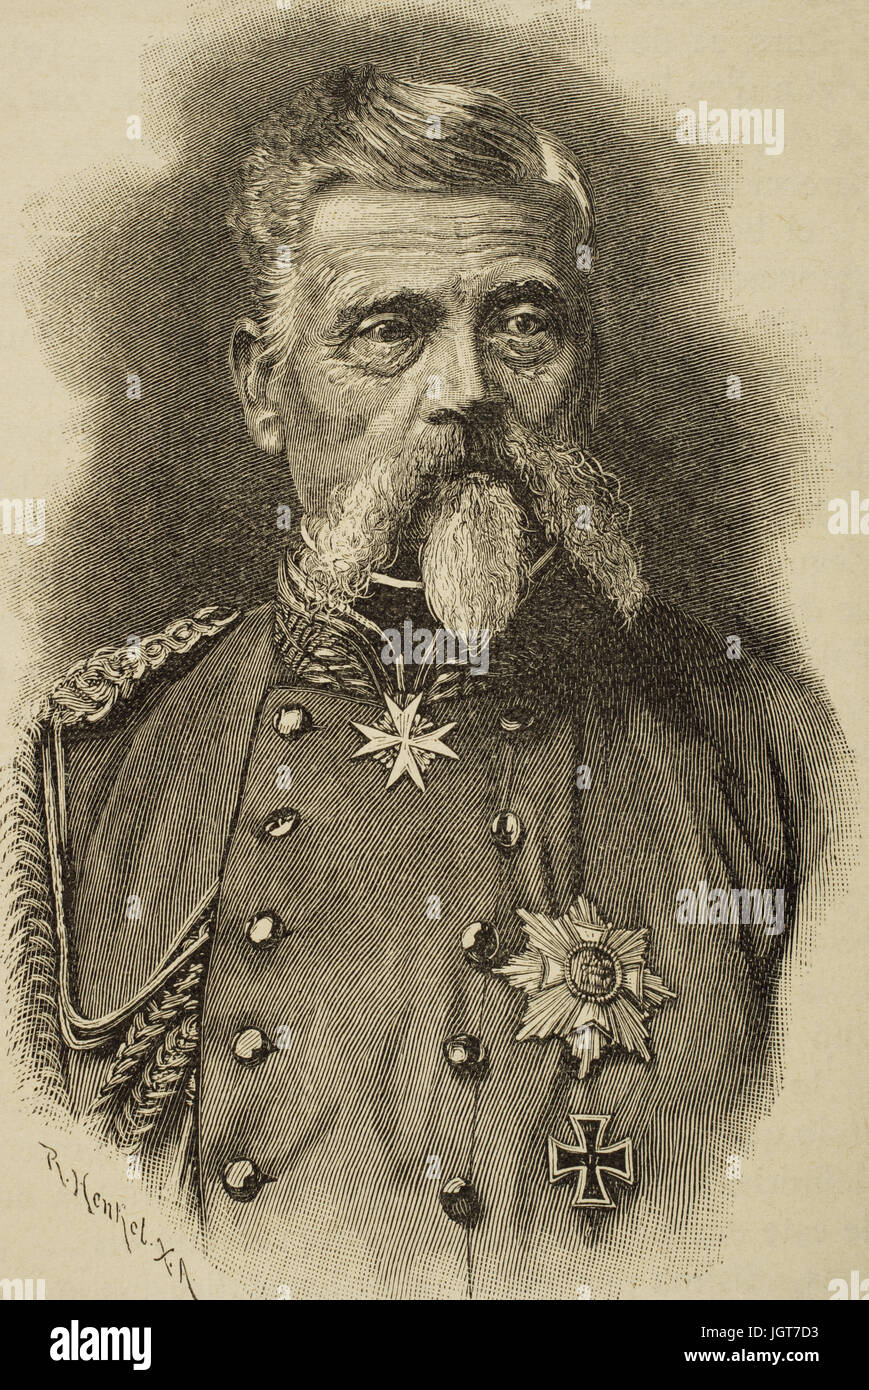 Ludwig Freiherr von und zu der Tann-Rathsamhausen (1815-1881). German general. Engraving by R. Henkel in Universal History, 1885. Stock Photo